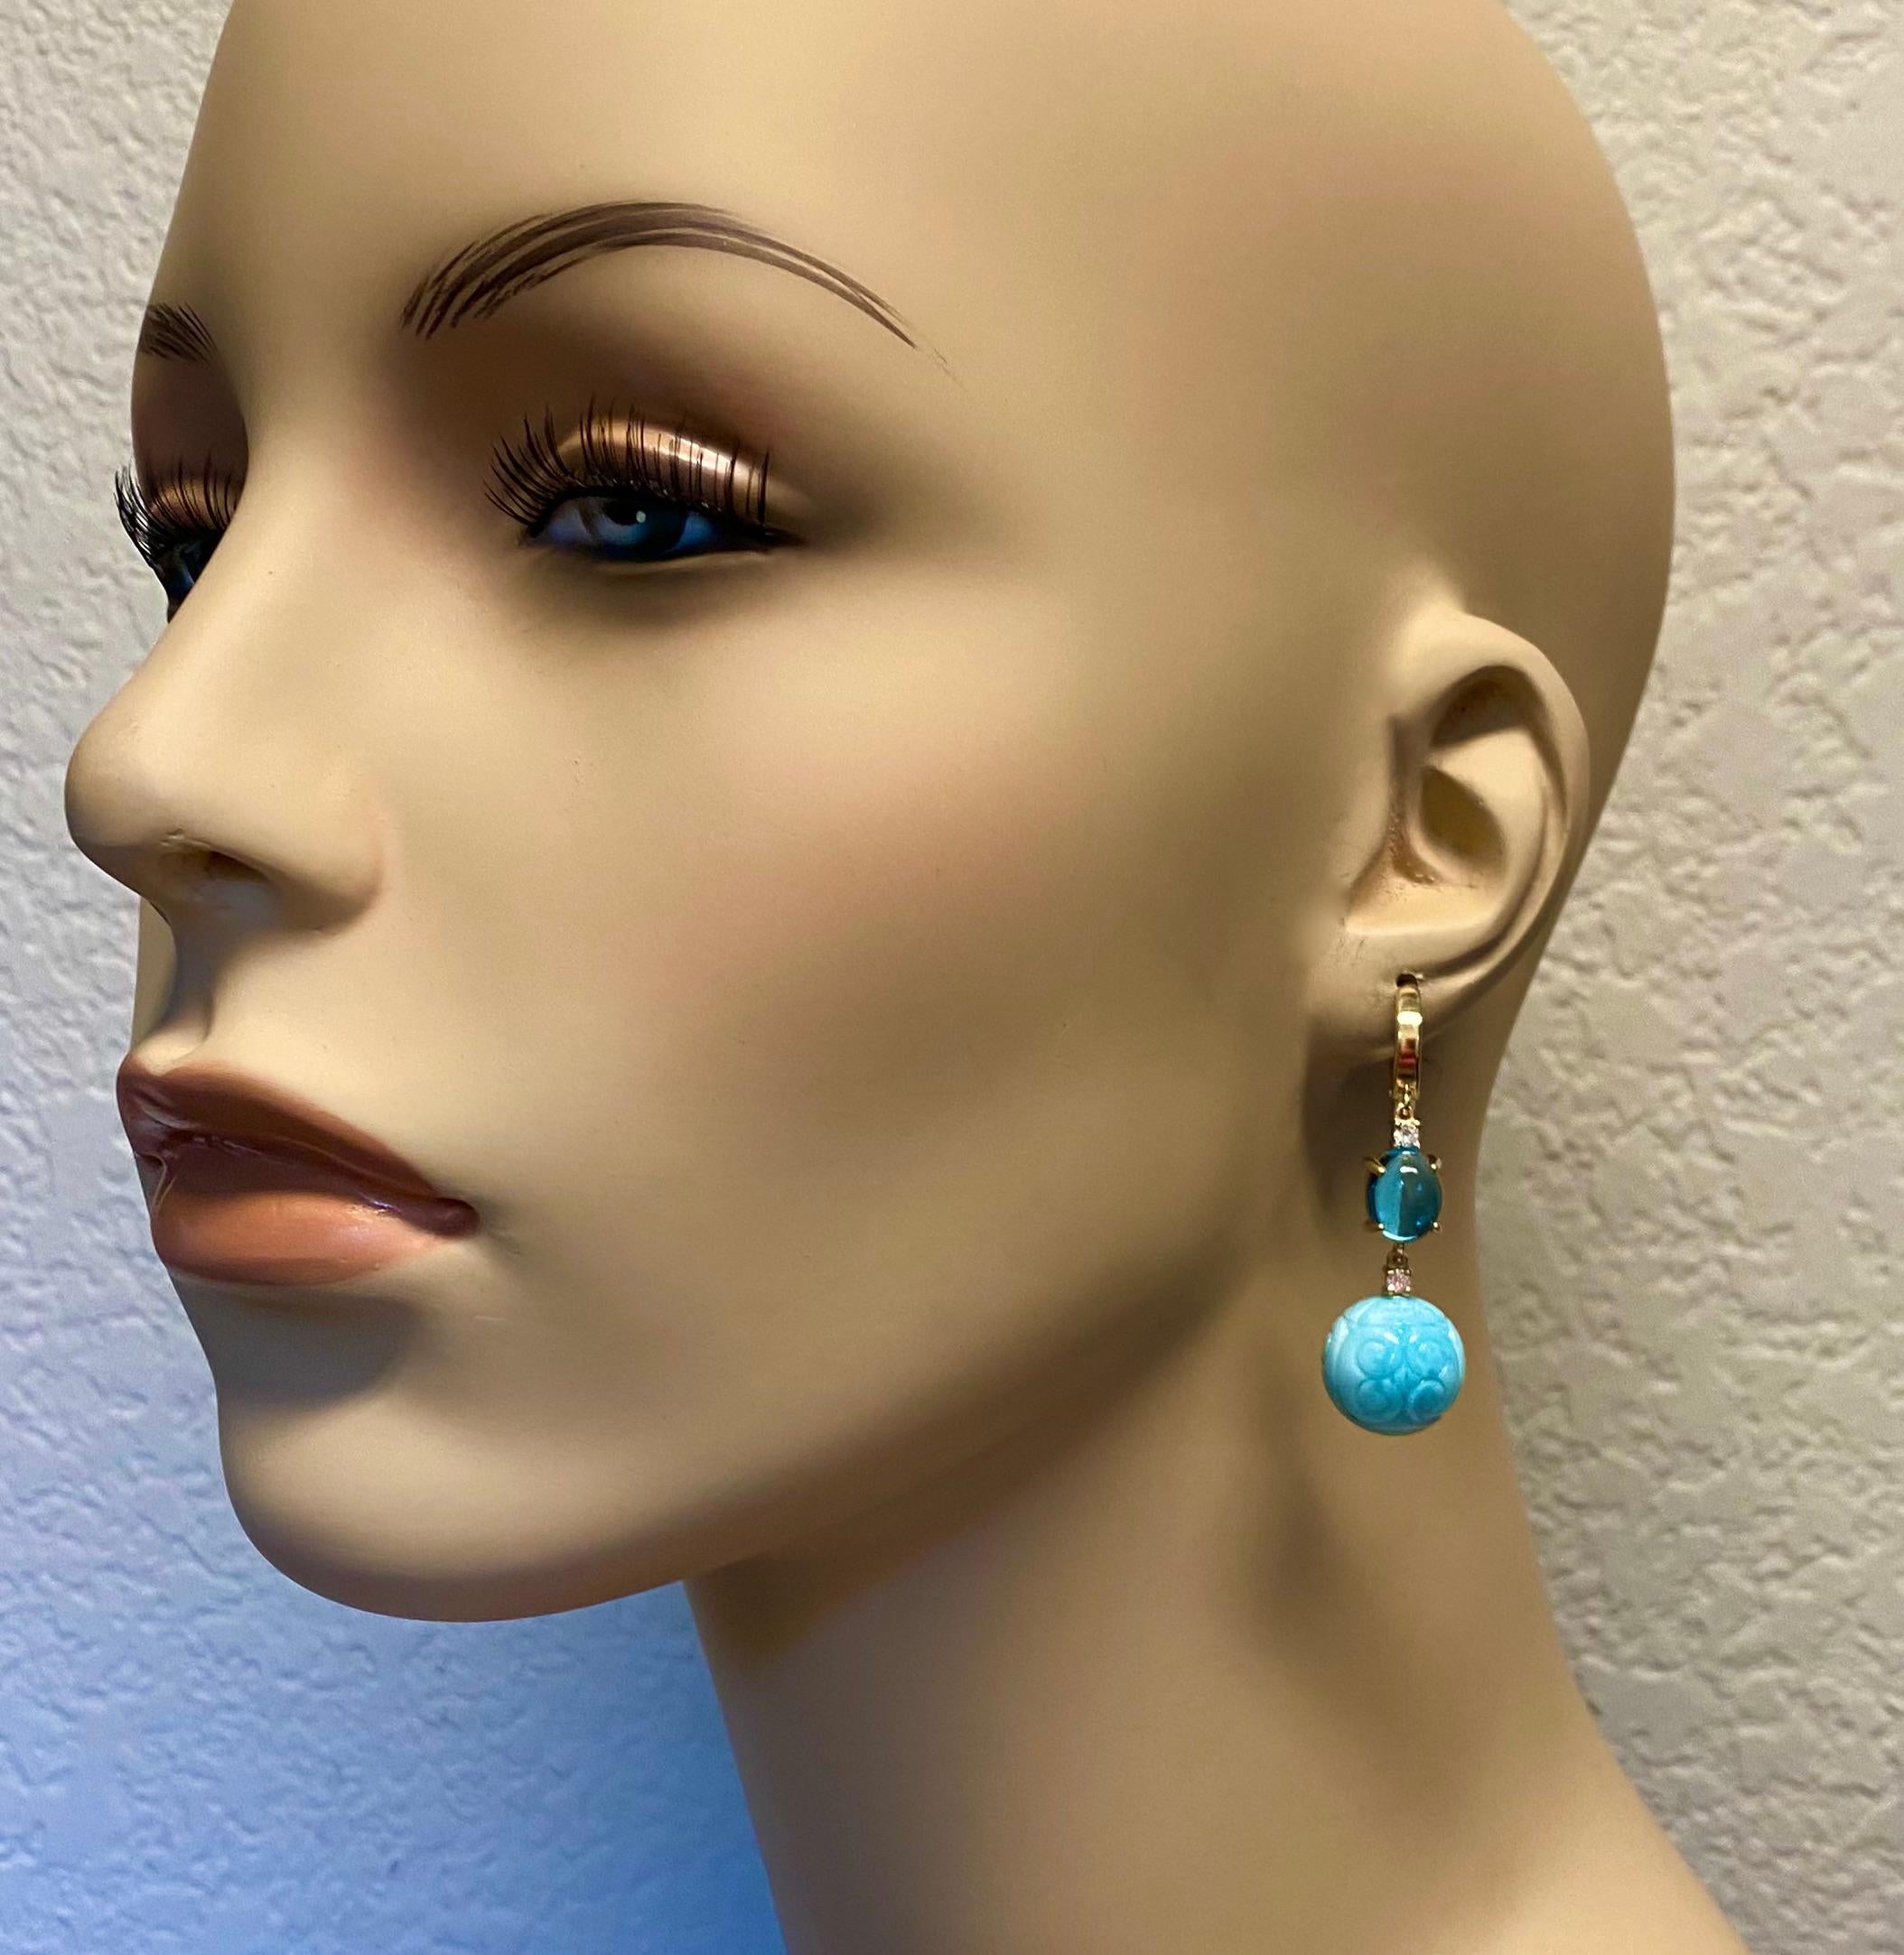 Le larimar est associé à la topaze bleue suisse dans ces boucles d'oreilles pendantes faciles à porter.  Le larimar est une variété bleue rare de pectolite, un minéral silicaté, que l'on ne trouve qu'en République dominicaine, près de la ville de